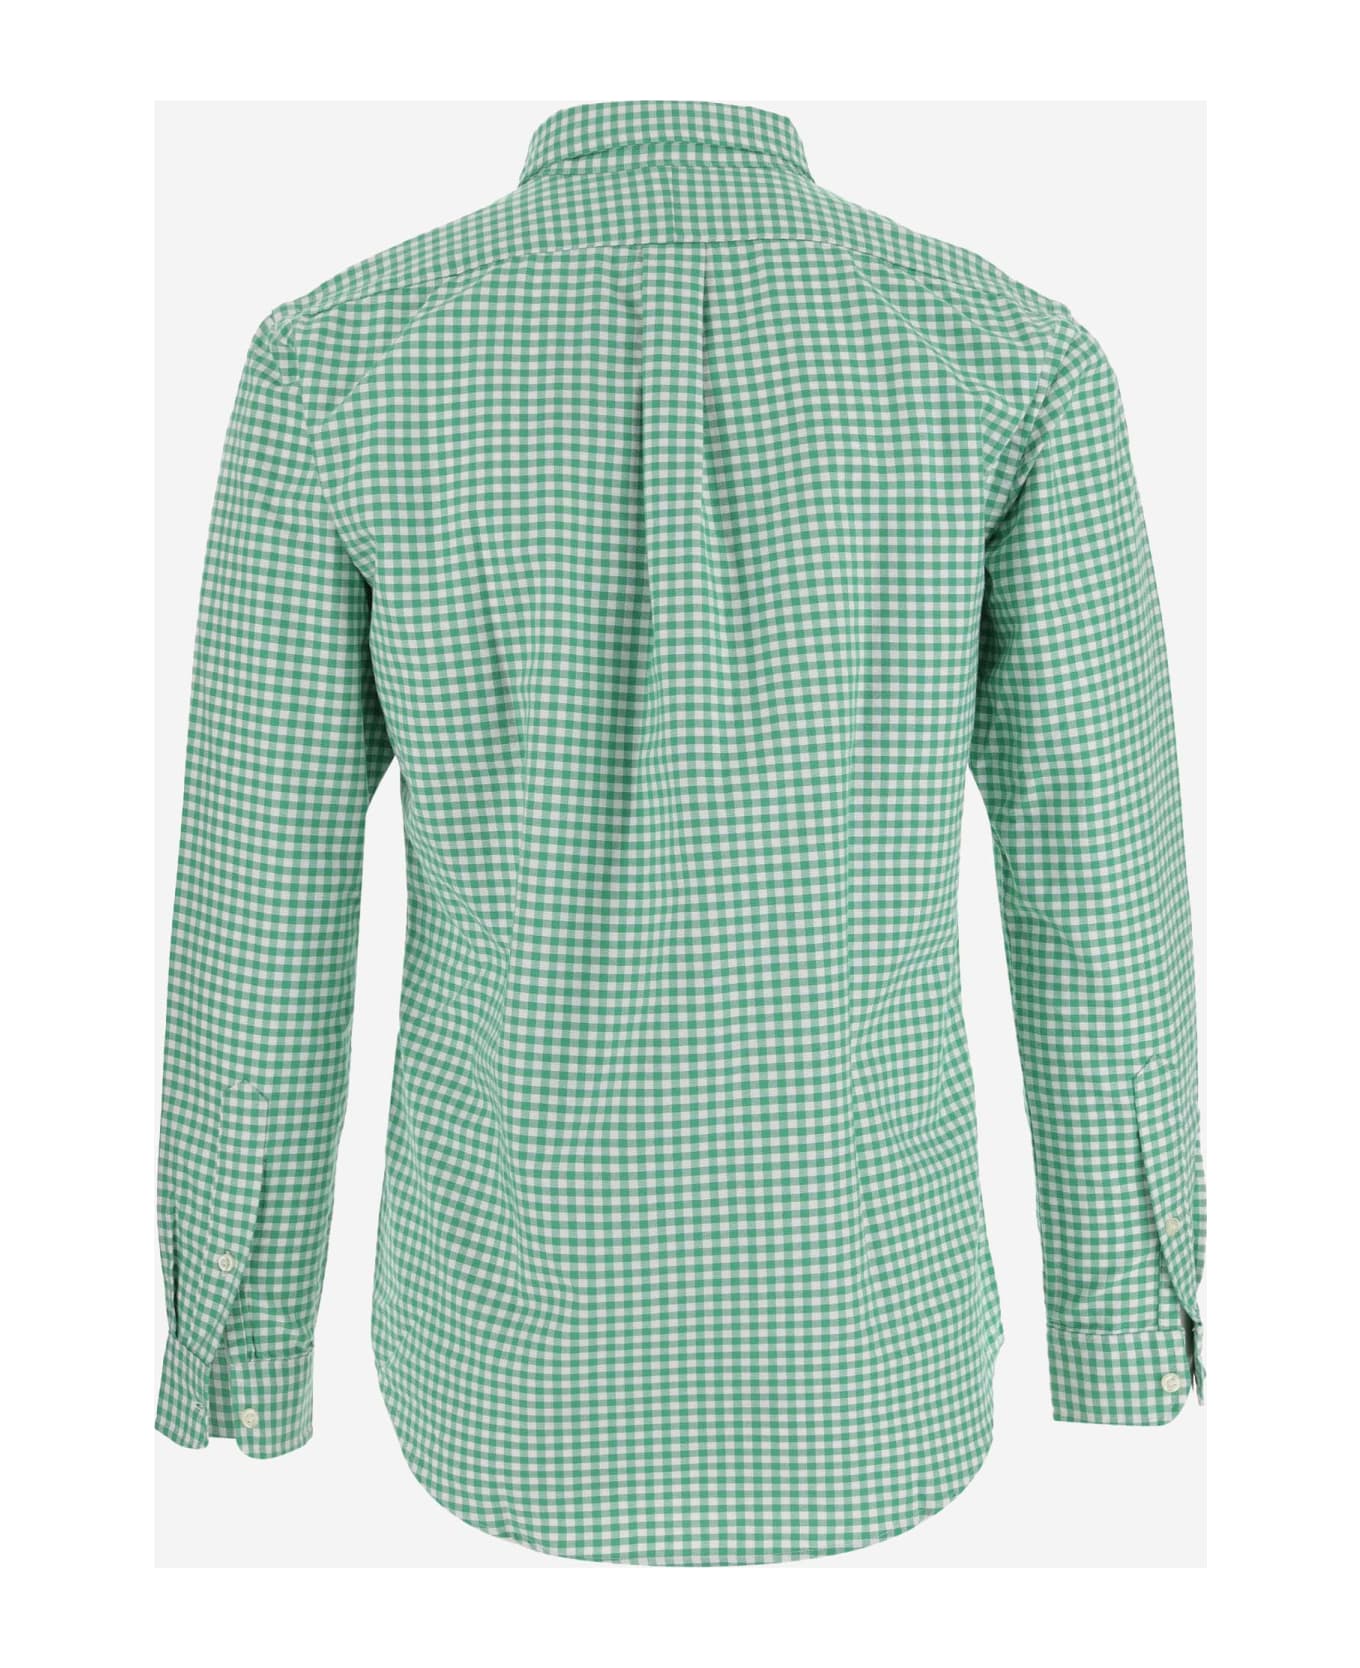 Ralph Lauren Cotton Shirt With Logo - Green